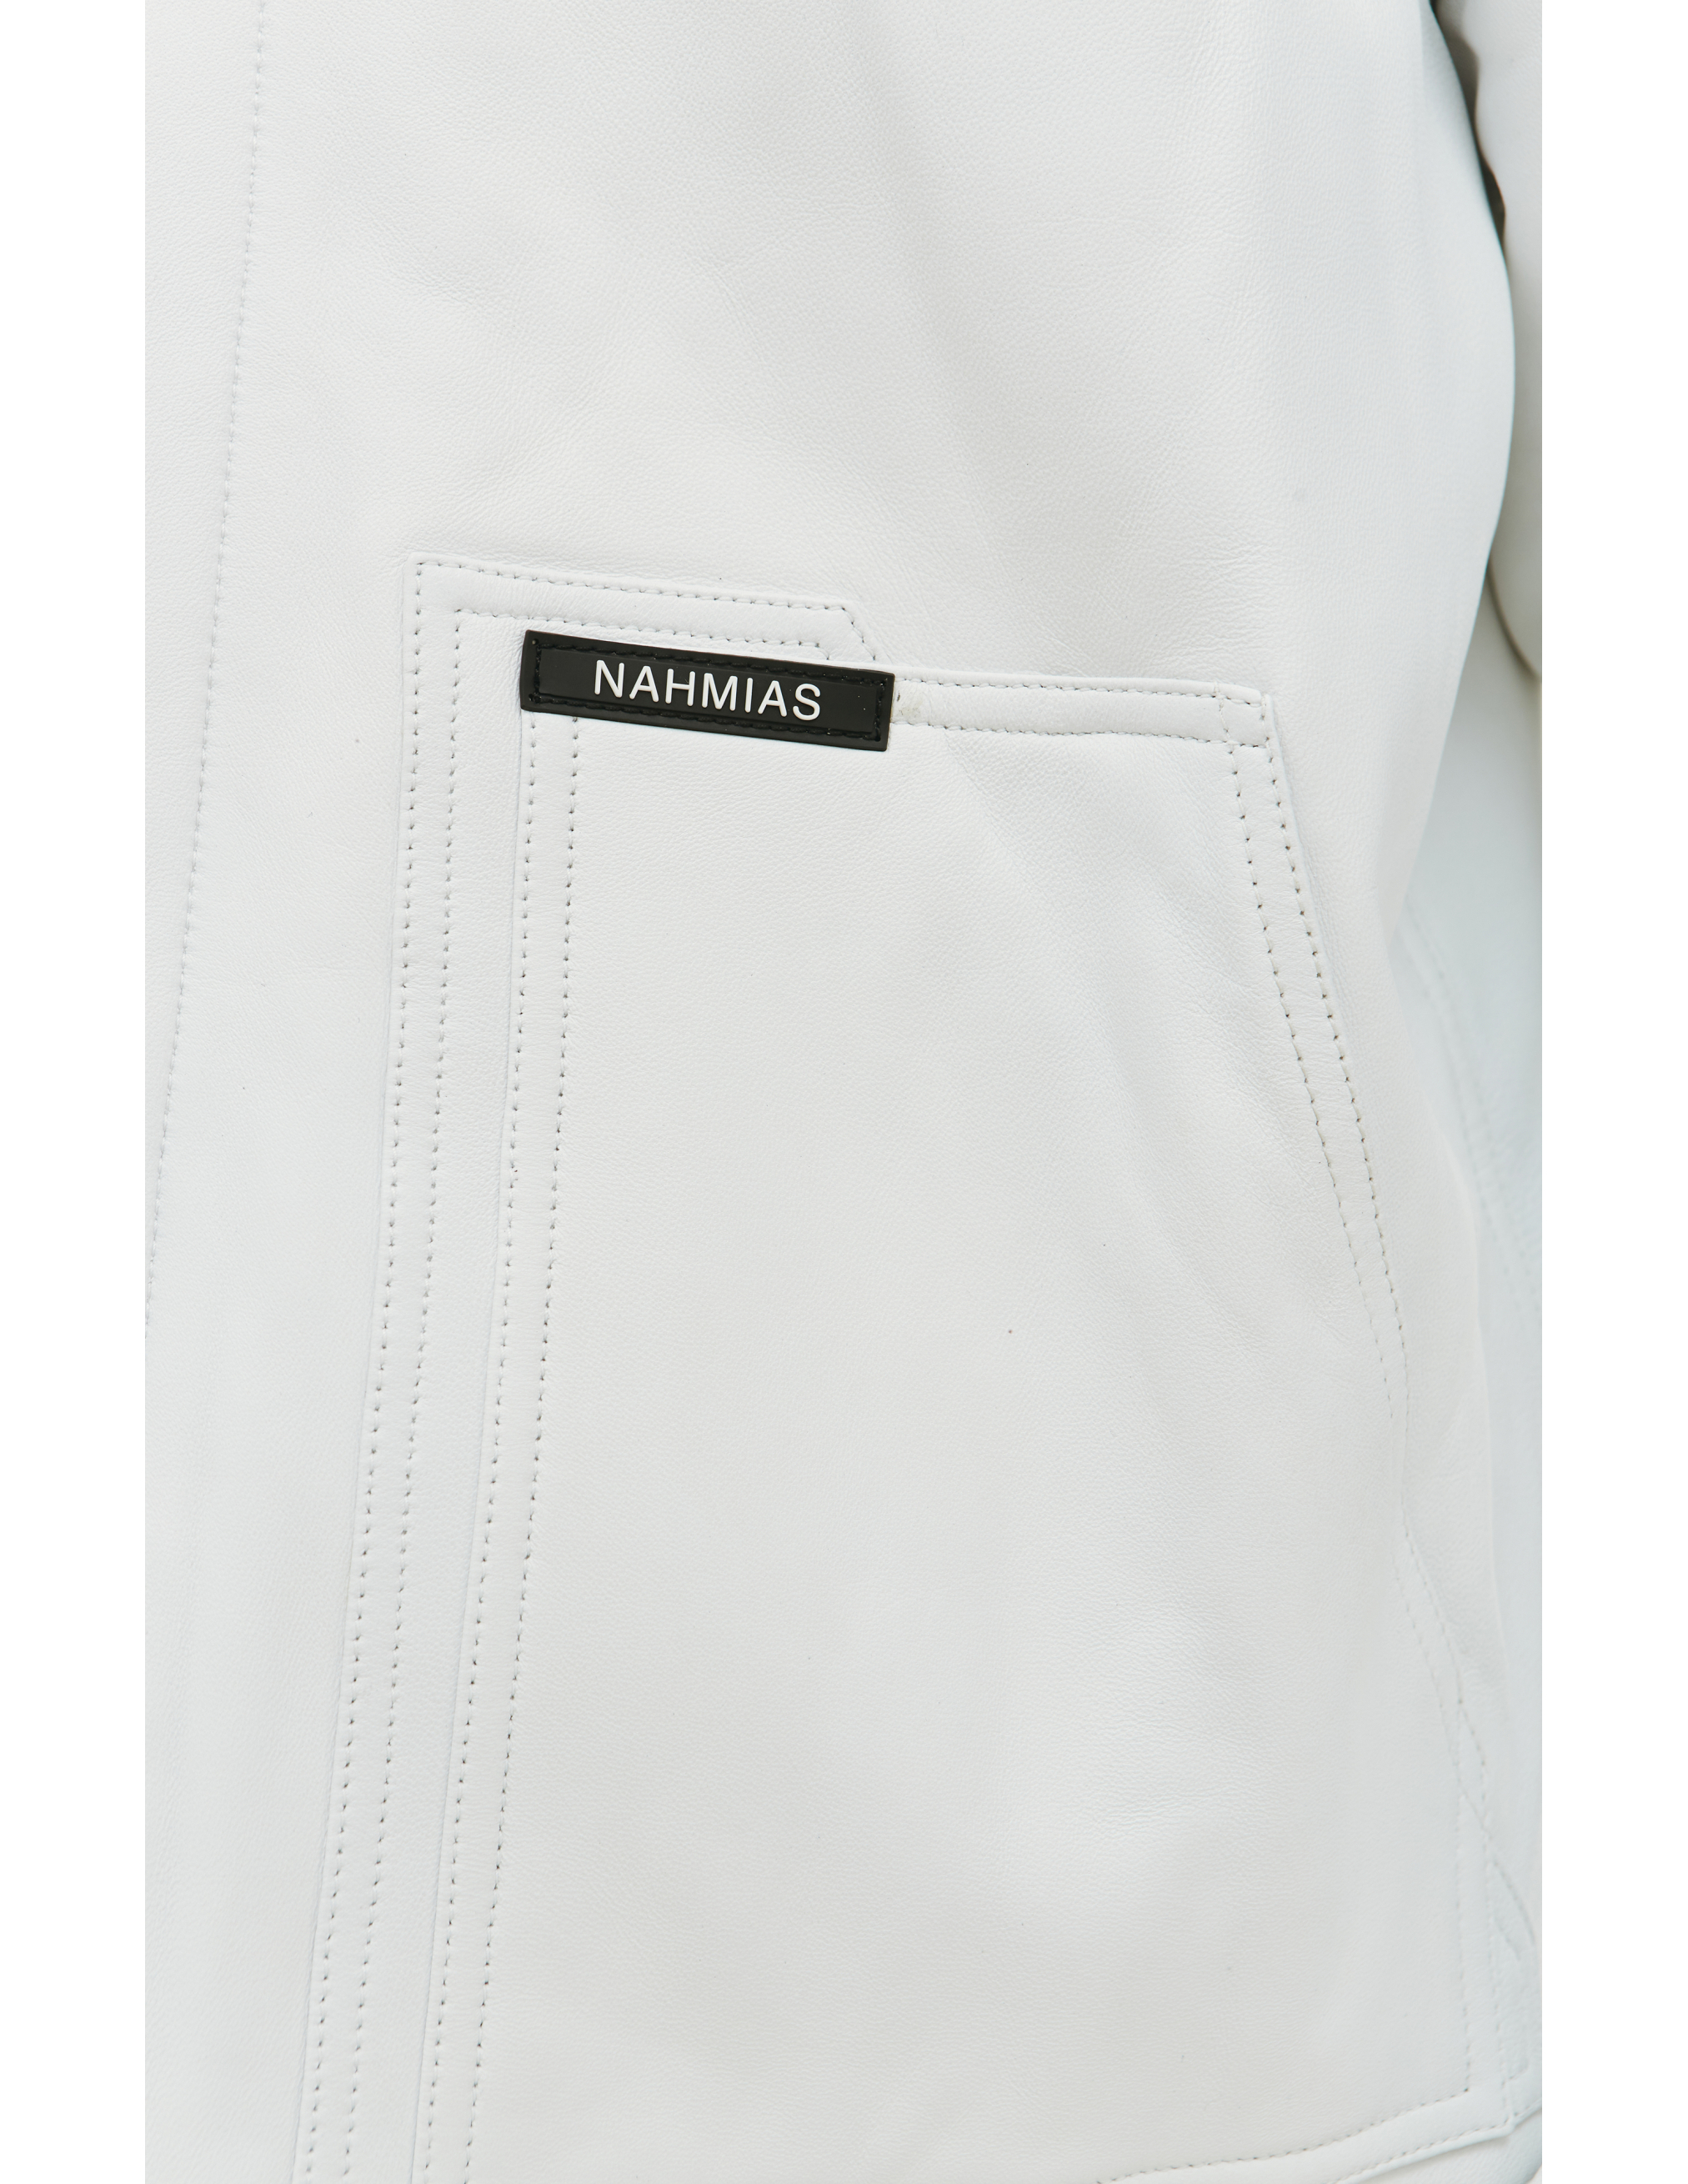 Кожаная куртка с меховым воротником Nahmias AW22-2-7017-F0046-WHITE, размер XL - фото 5